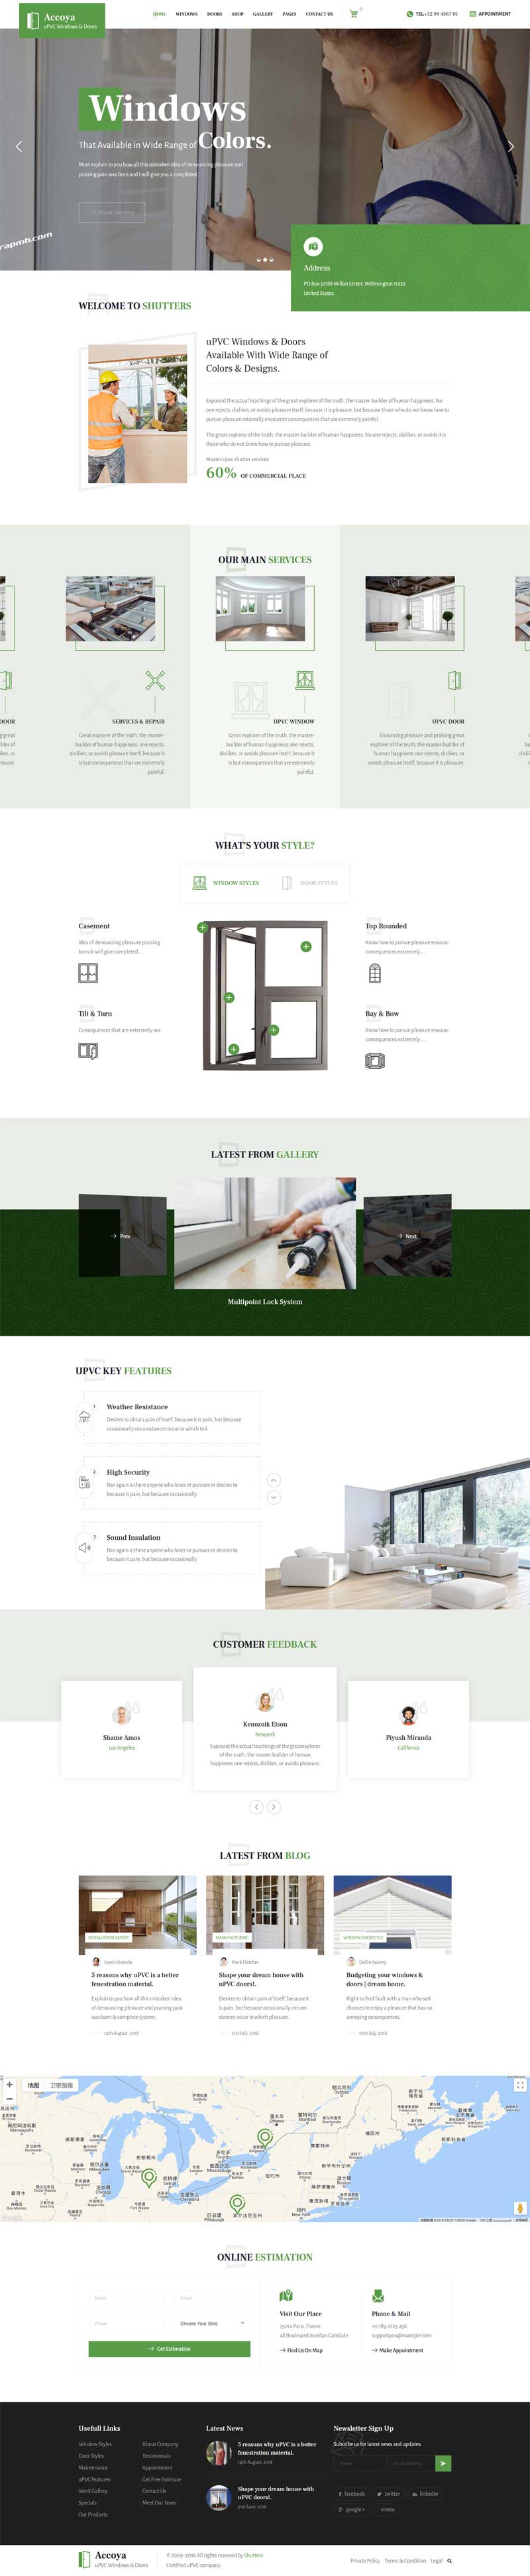 绿色的门窗保洁服务公司网站模板